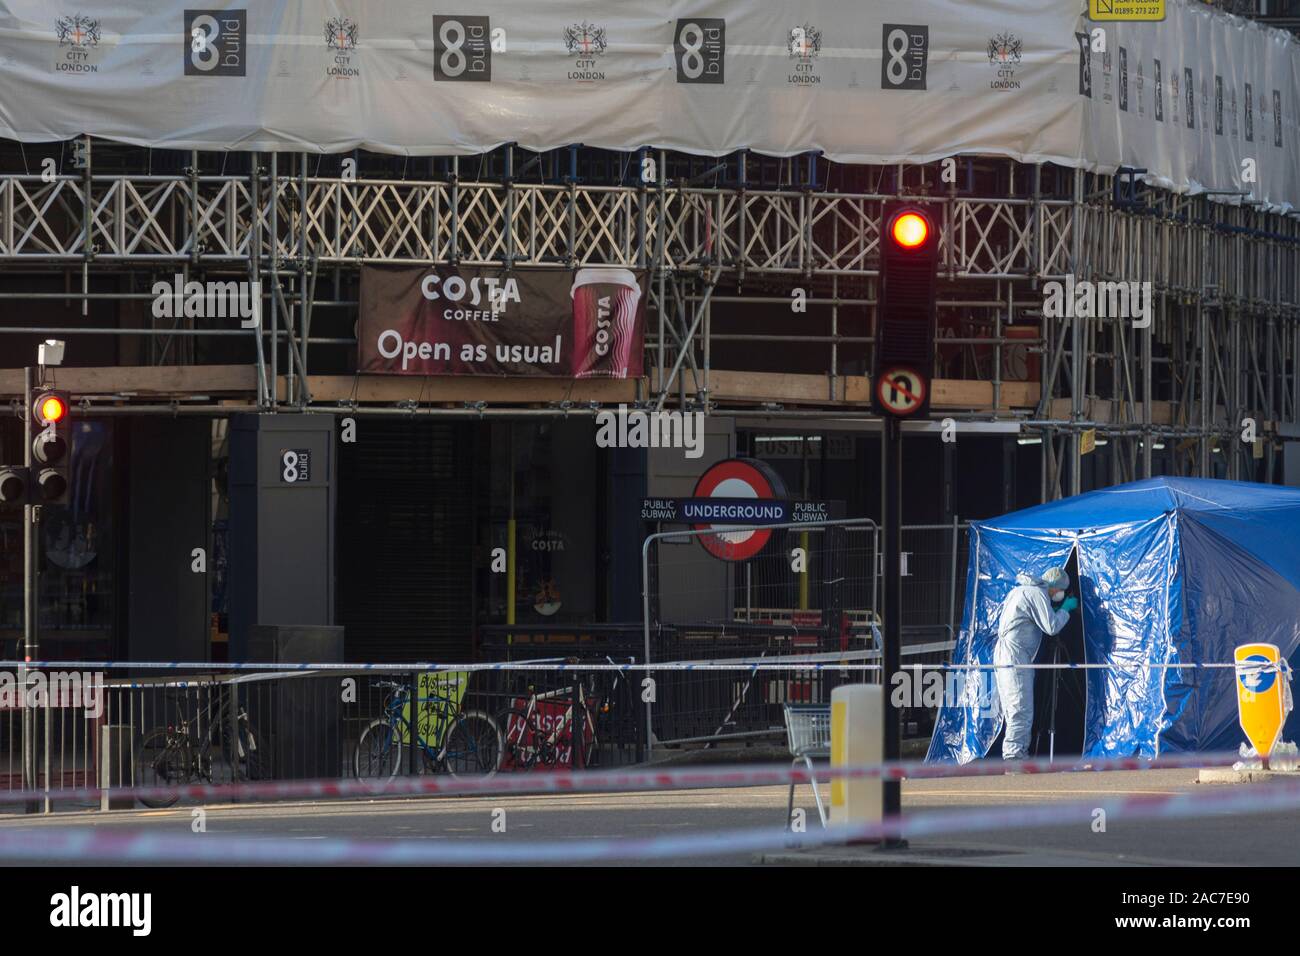 Der Morgen nach dem Terroranschlag in Fischhändler Halle auf der London Bridge, in denen Usman Khan (ein Verurteilter, terroristische befreit) 2 tötete bei einem Messer ein Angriff, anschließend von den Passanten in Angriff genommen - Durch und durch bewaffnete Polizei erschossen - Forensische Offiziere Arbeiten zur Aufnahme von Beweismaterial vor einem Eingang zur U-Bahnstation Monument, am 30. November 2019 in London, England. Stockfoto